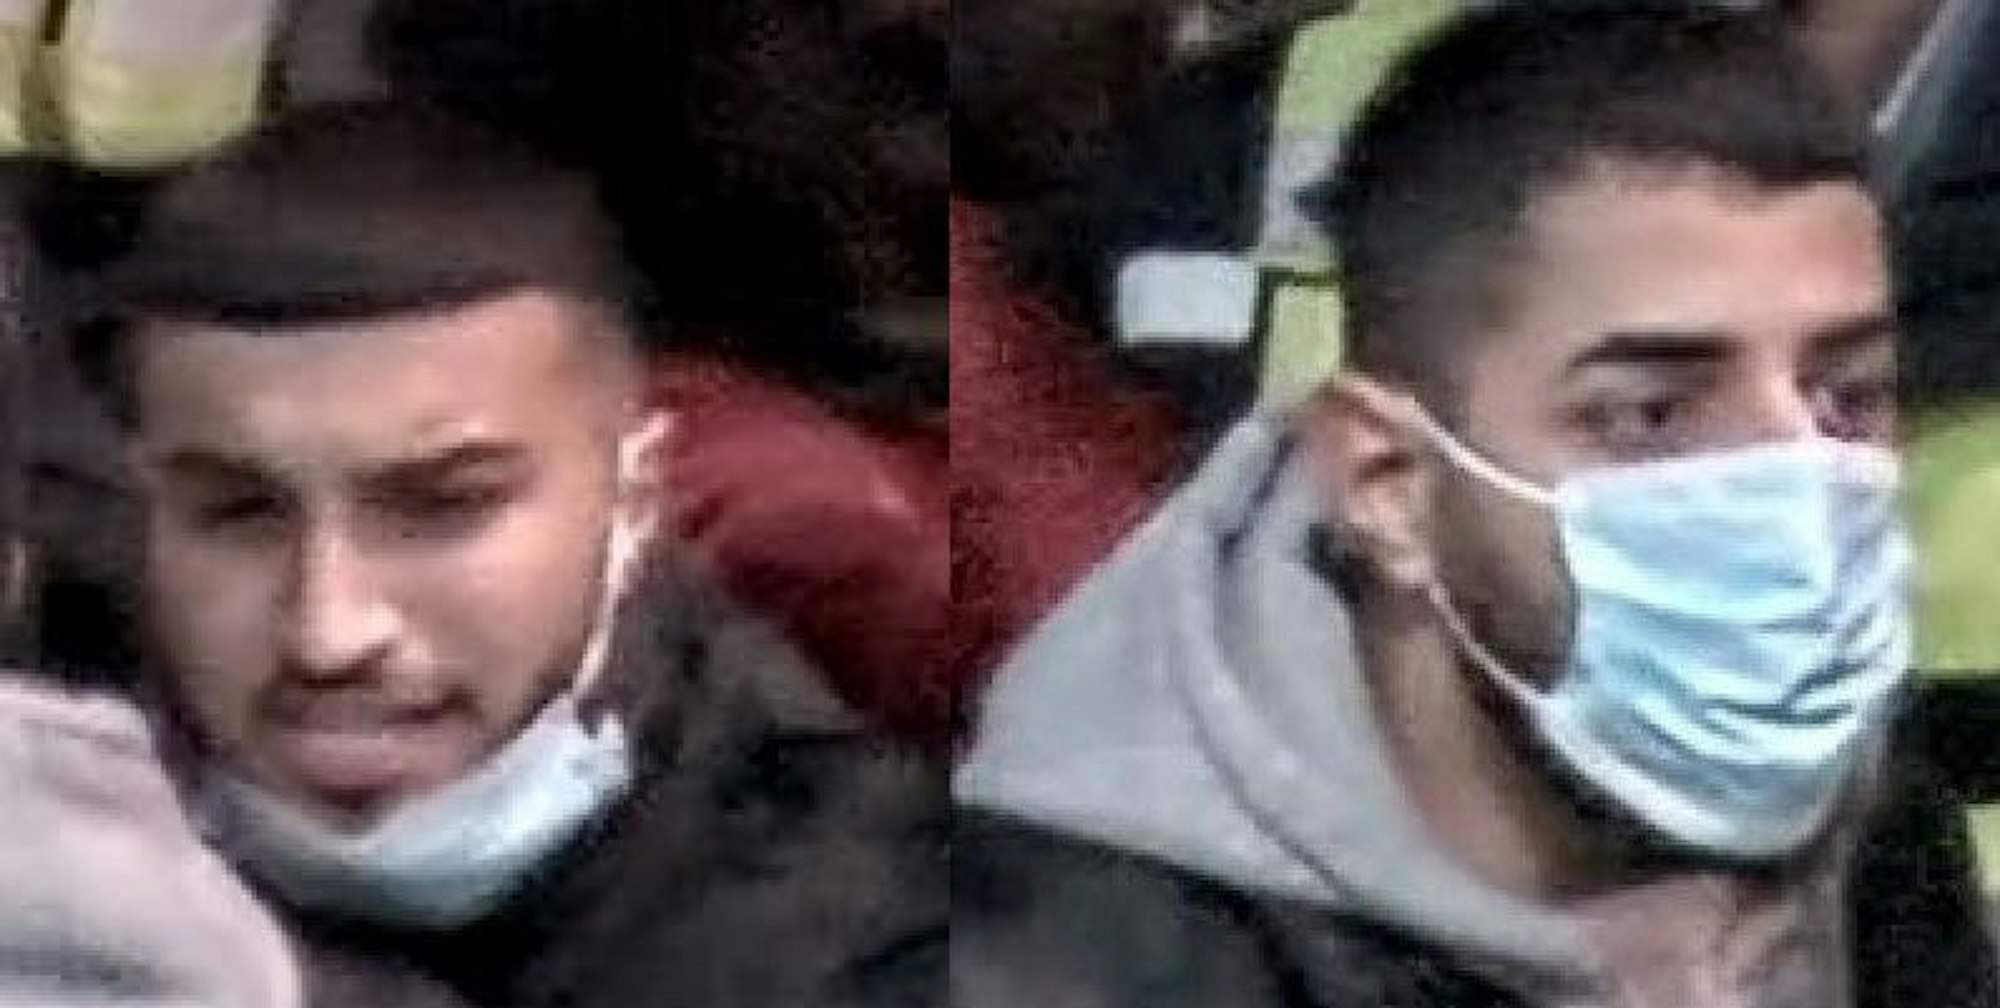 Das Foto zeigt zwei Männer, die zwei Mitarbeiter der Deutschen Bahn angegriffen haben sollen.